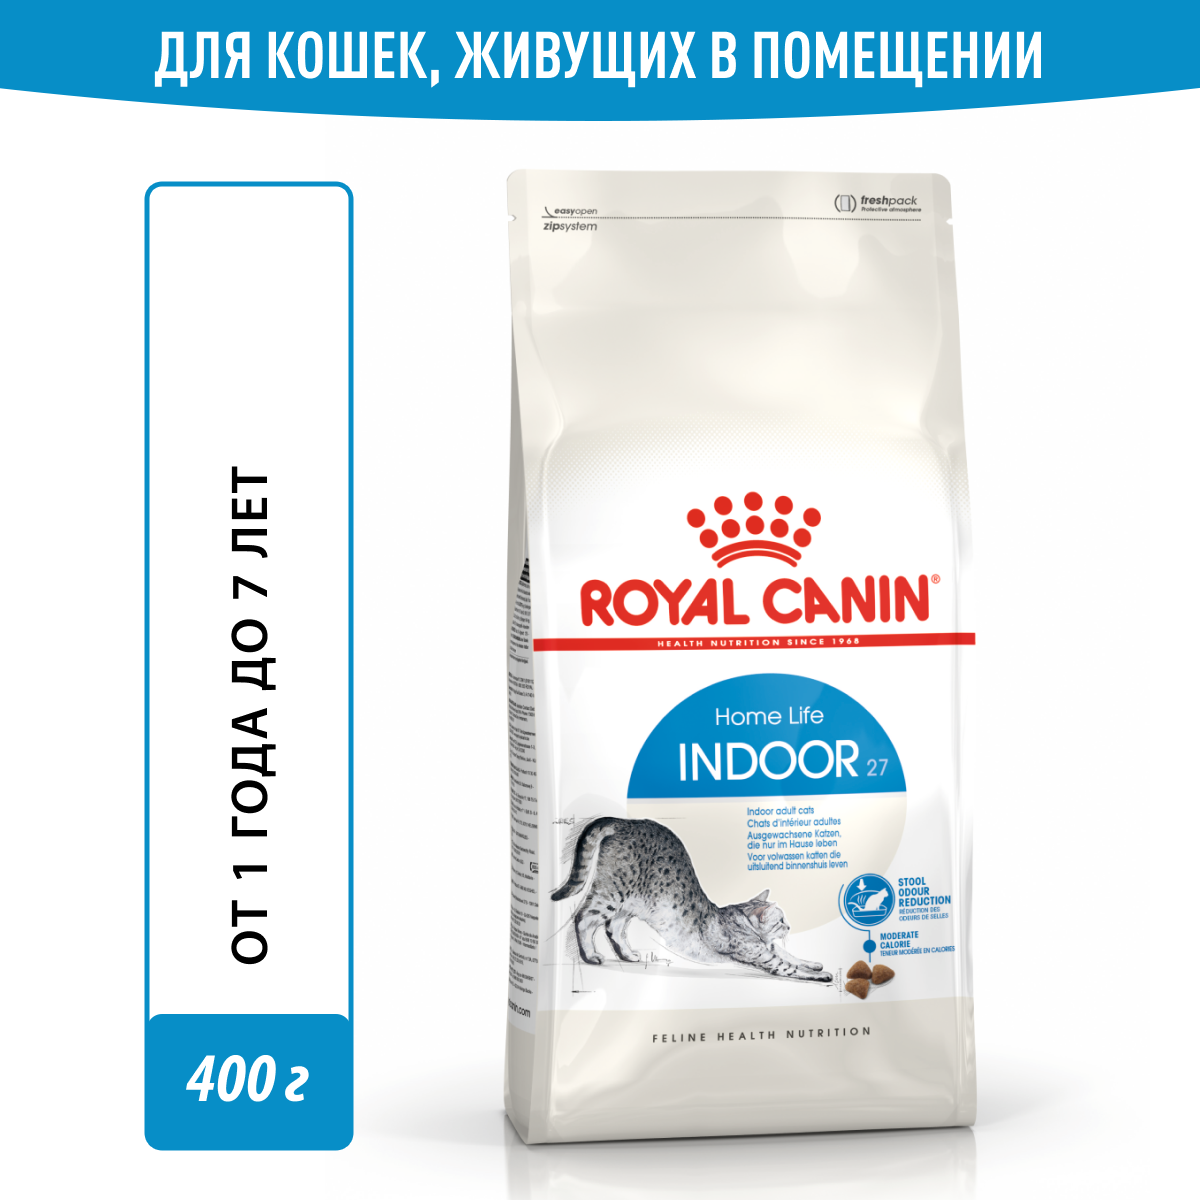 Сухой корм Royal Canin 27 для кошек, живущих в помещении, для снижения запаха стула